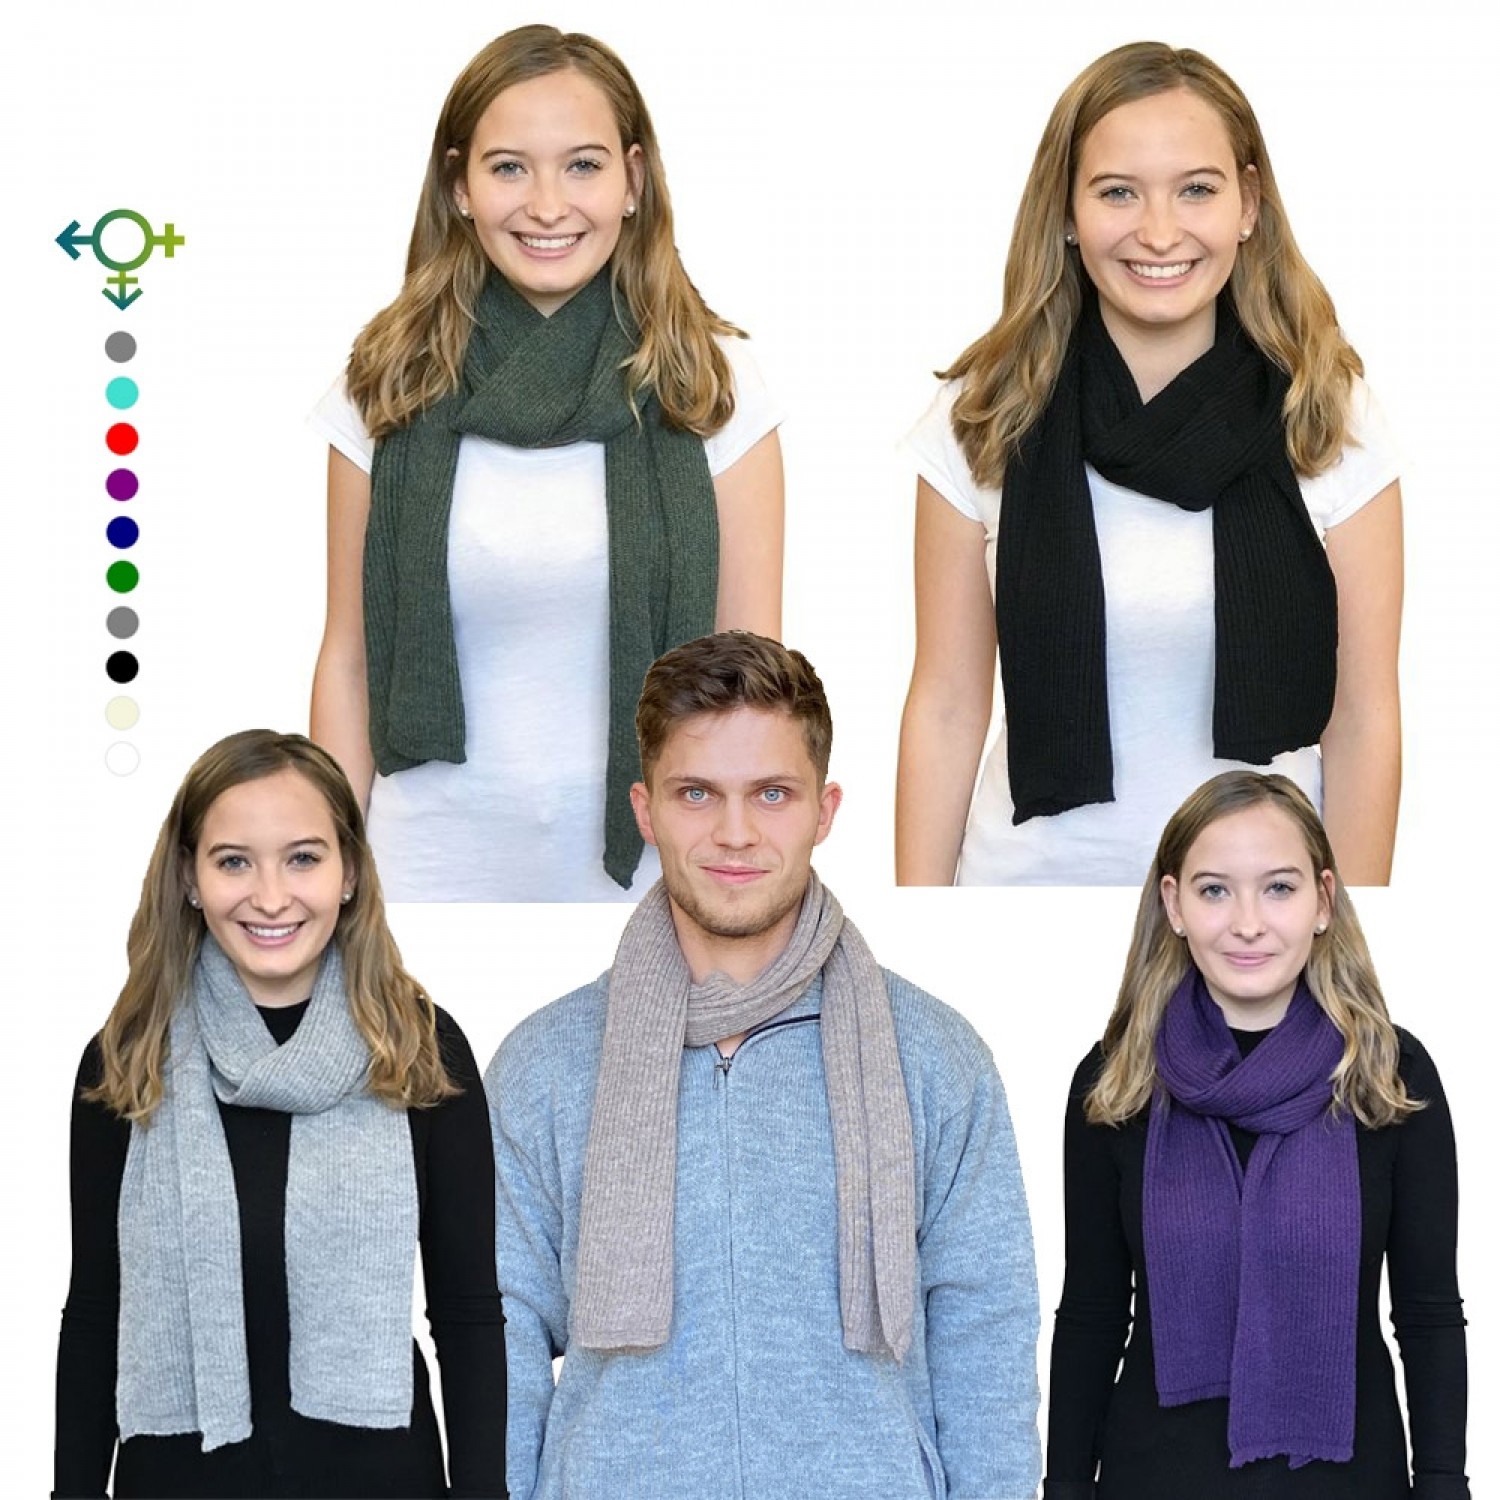 Albwolle Alpaka Schal für Damen, Herren & Divers, viele Farben